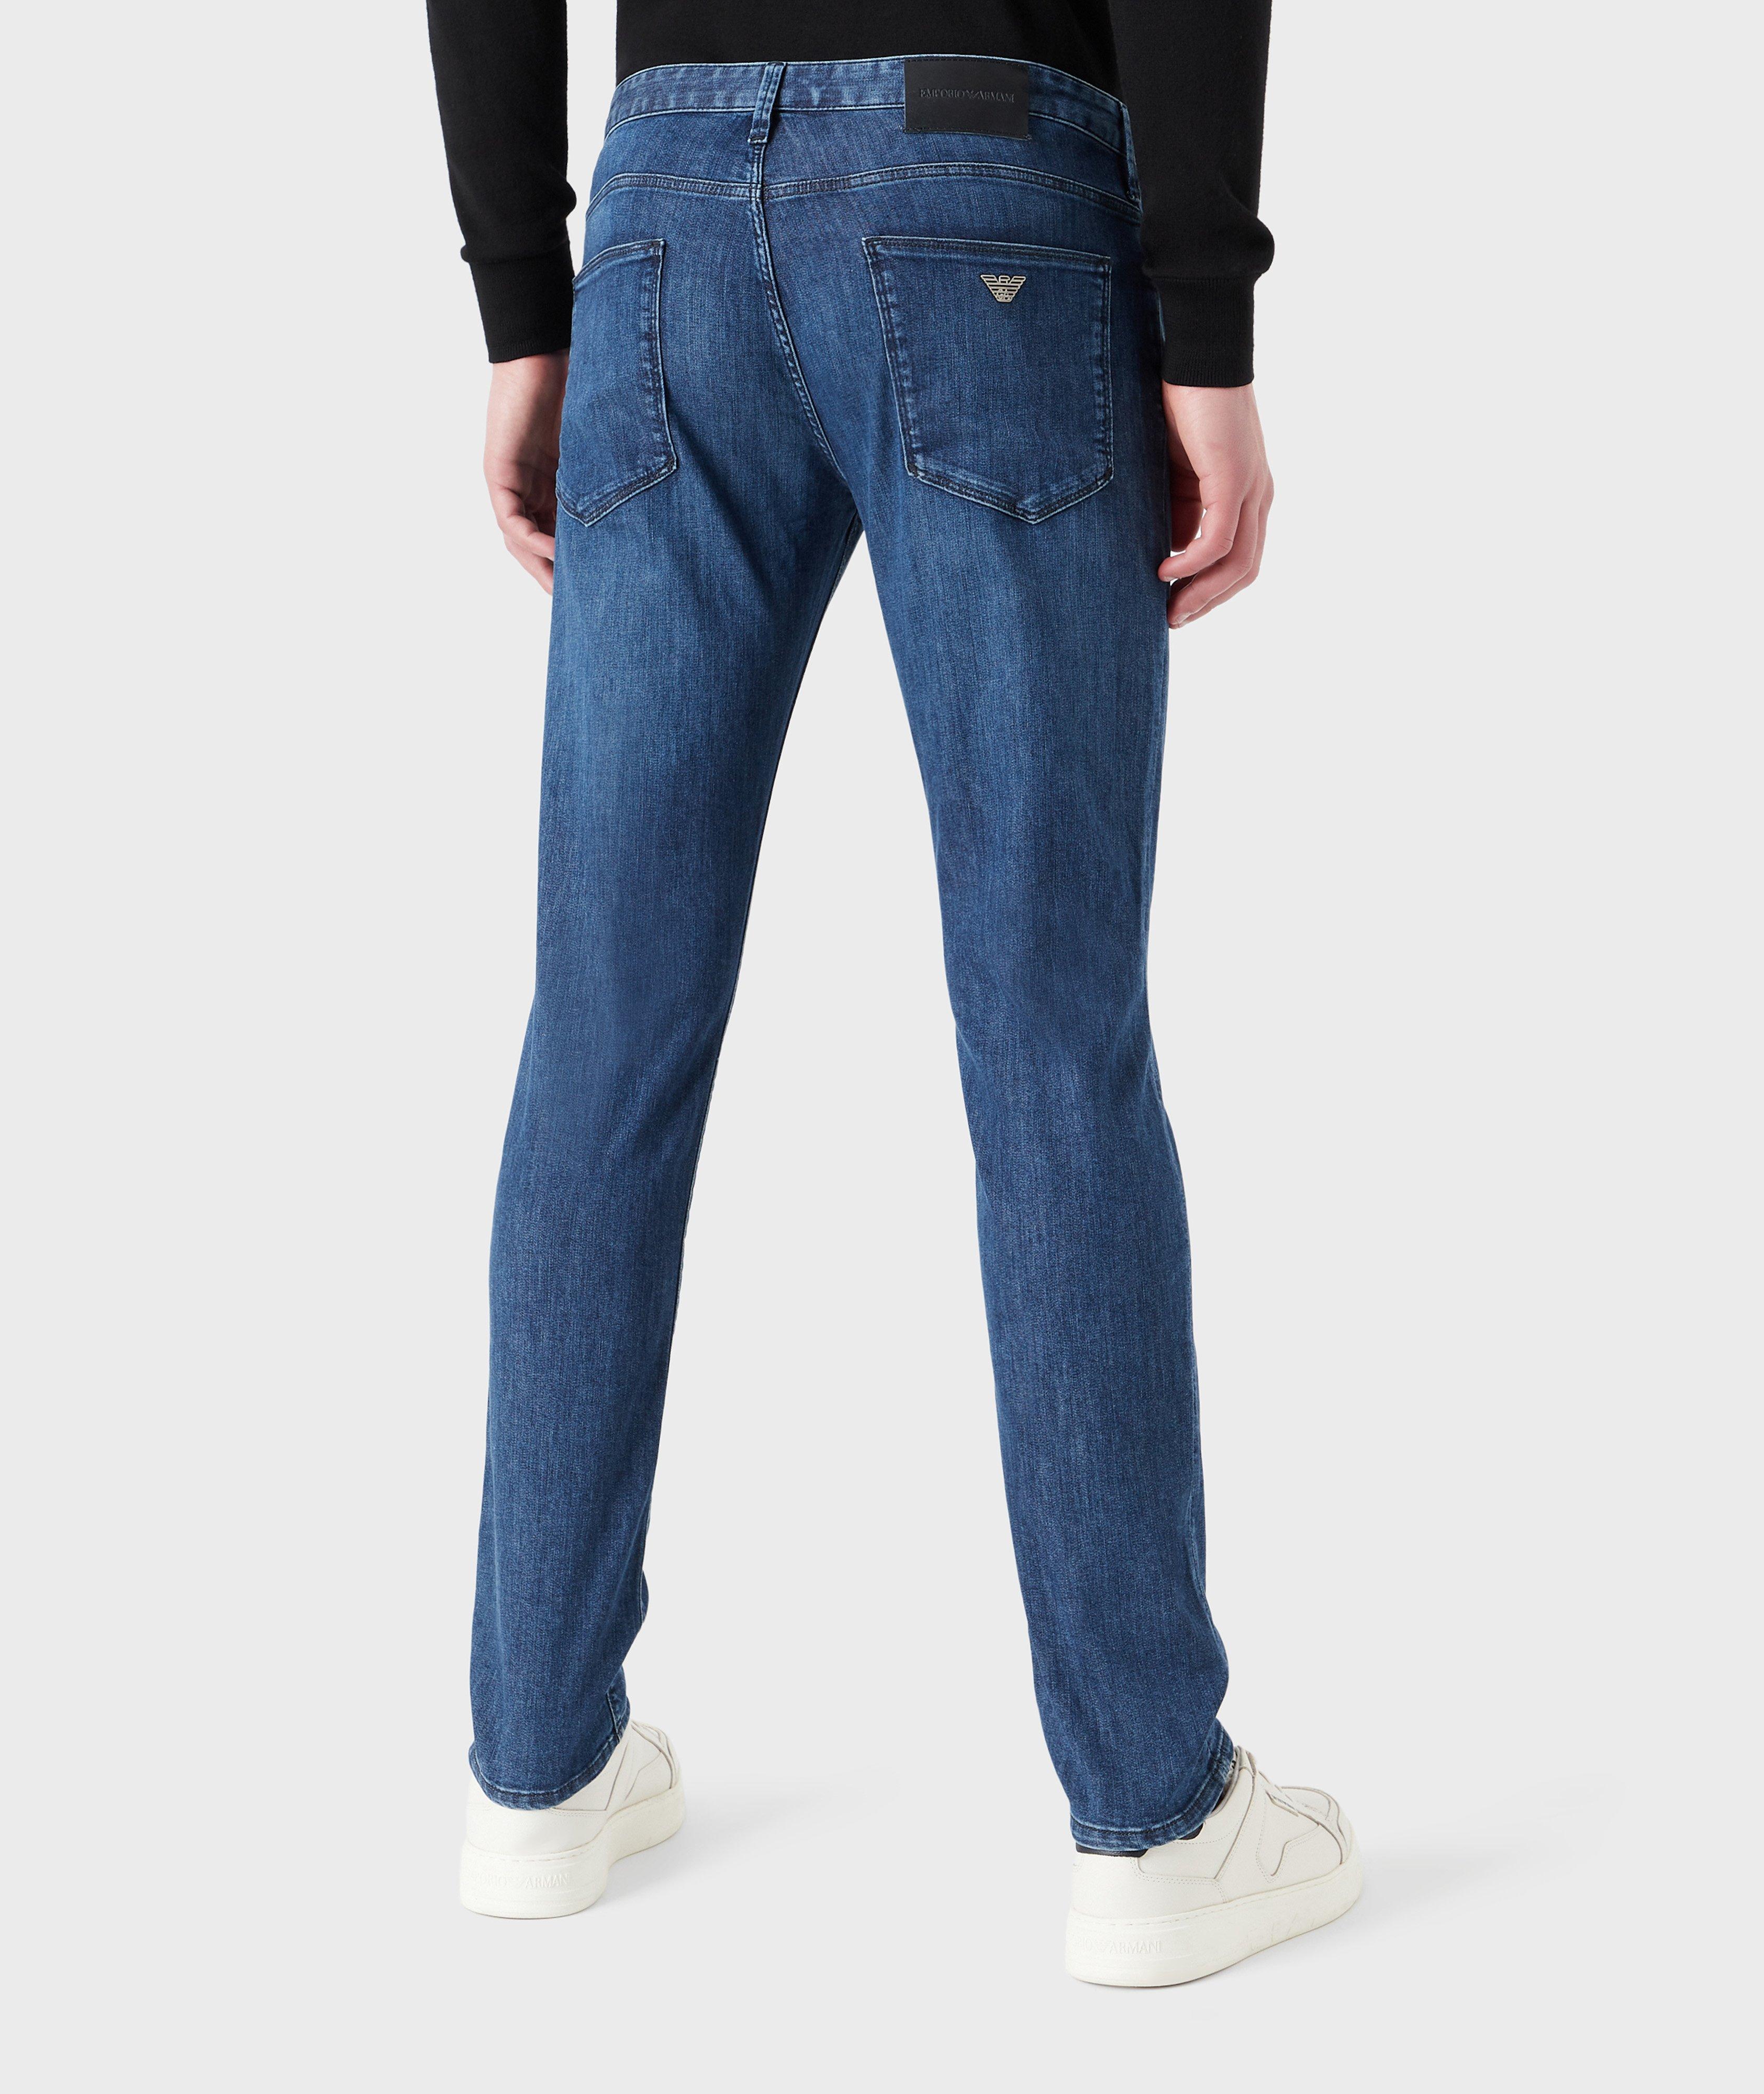 J06 Slim-Fit Cotton-Blend Jeans image 2